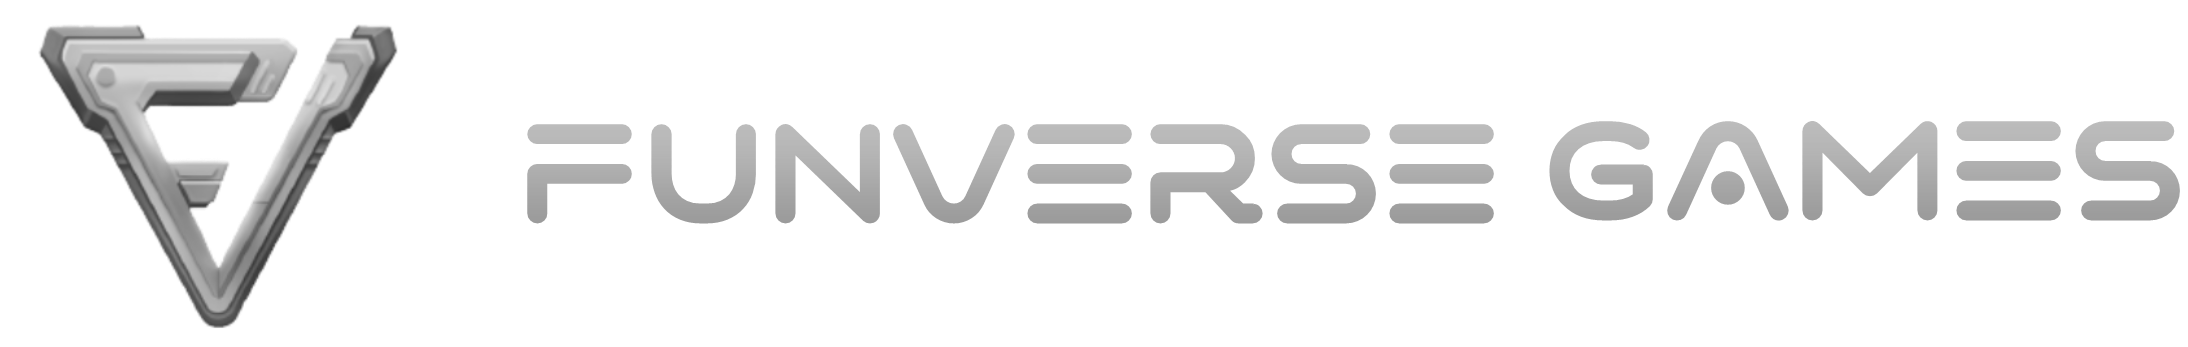 funverse-games-logo